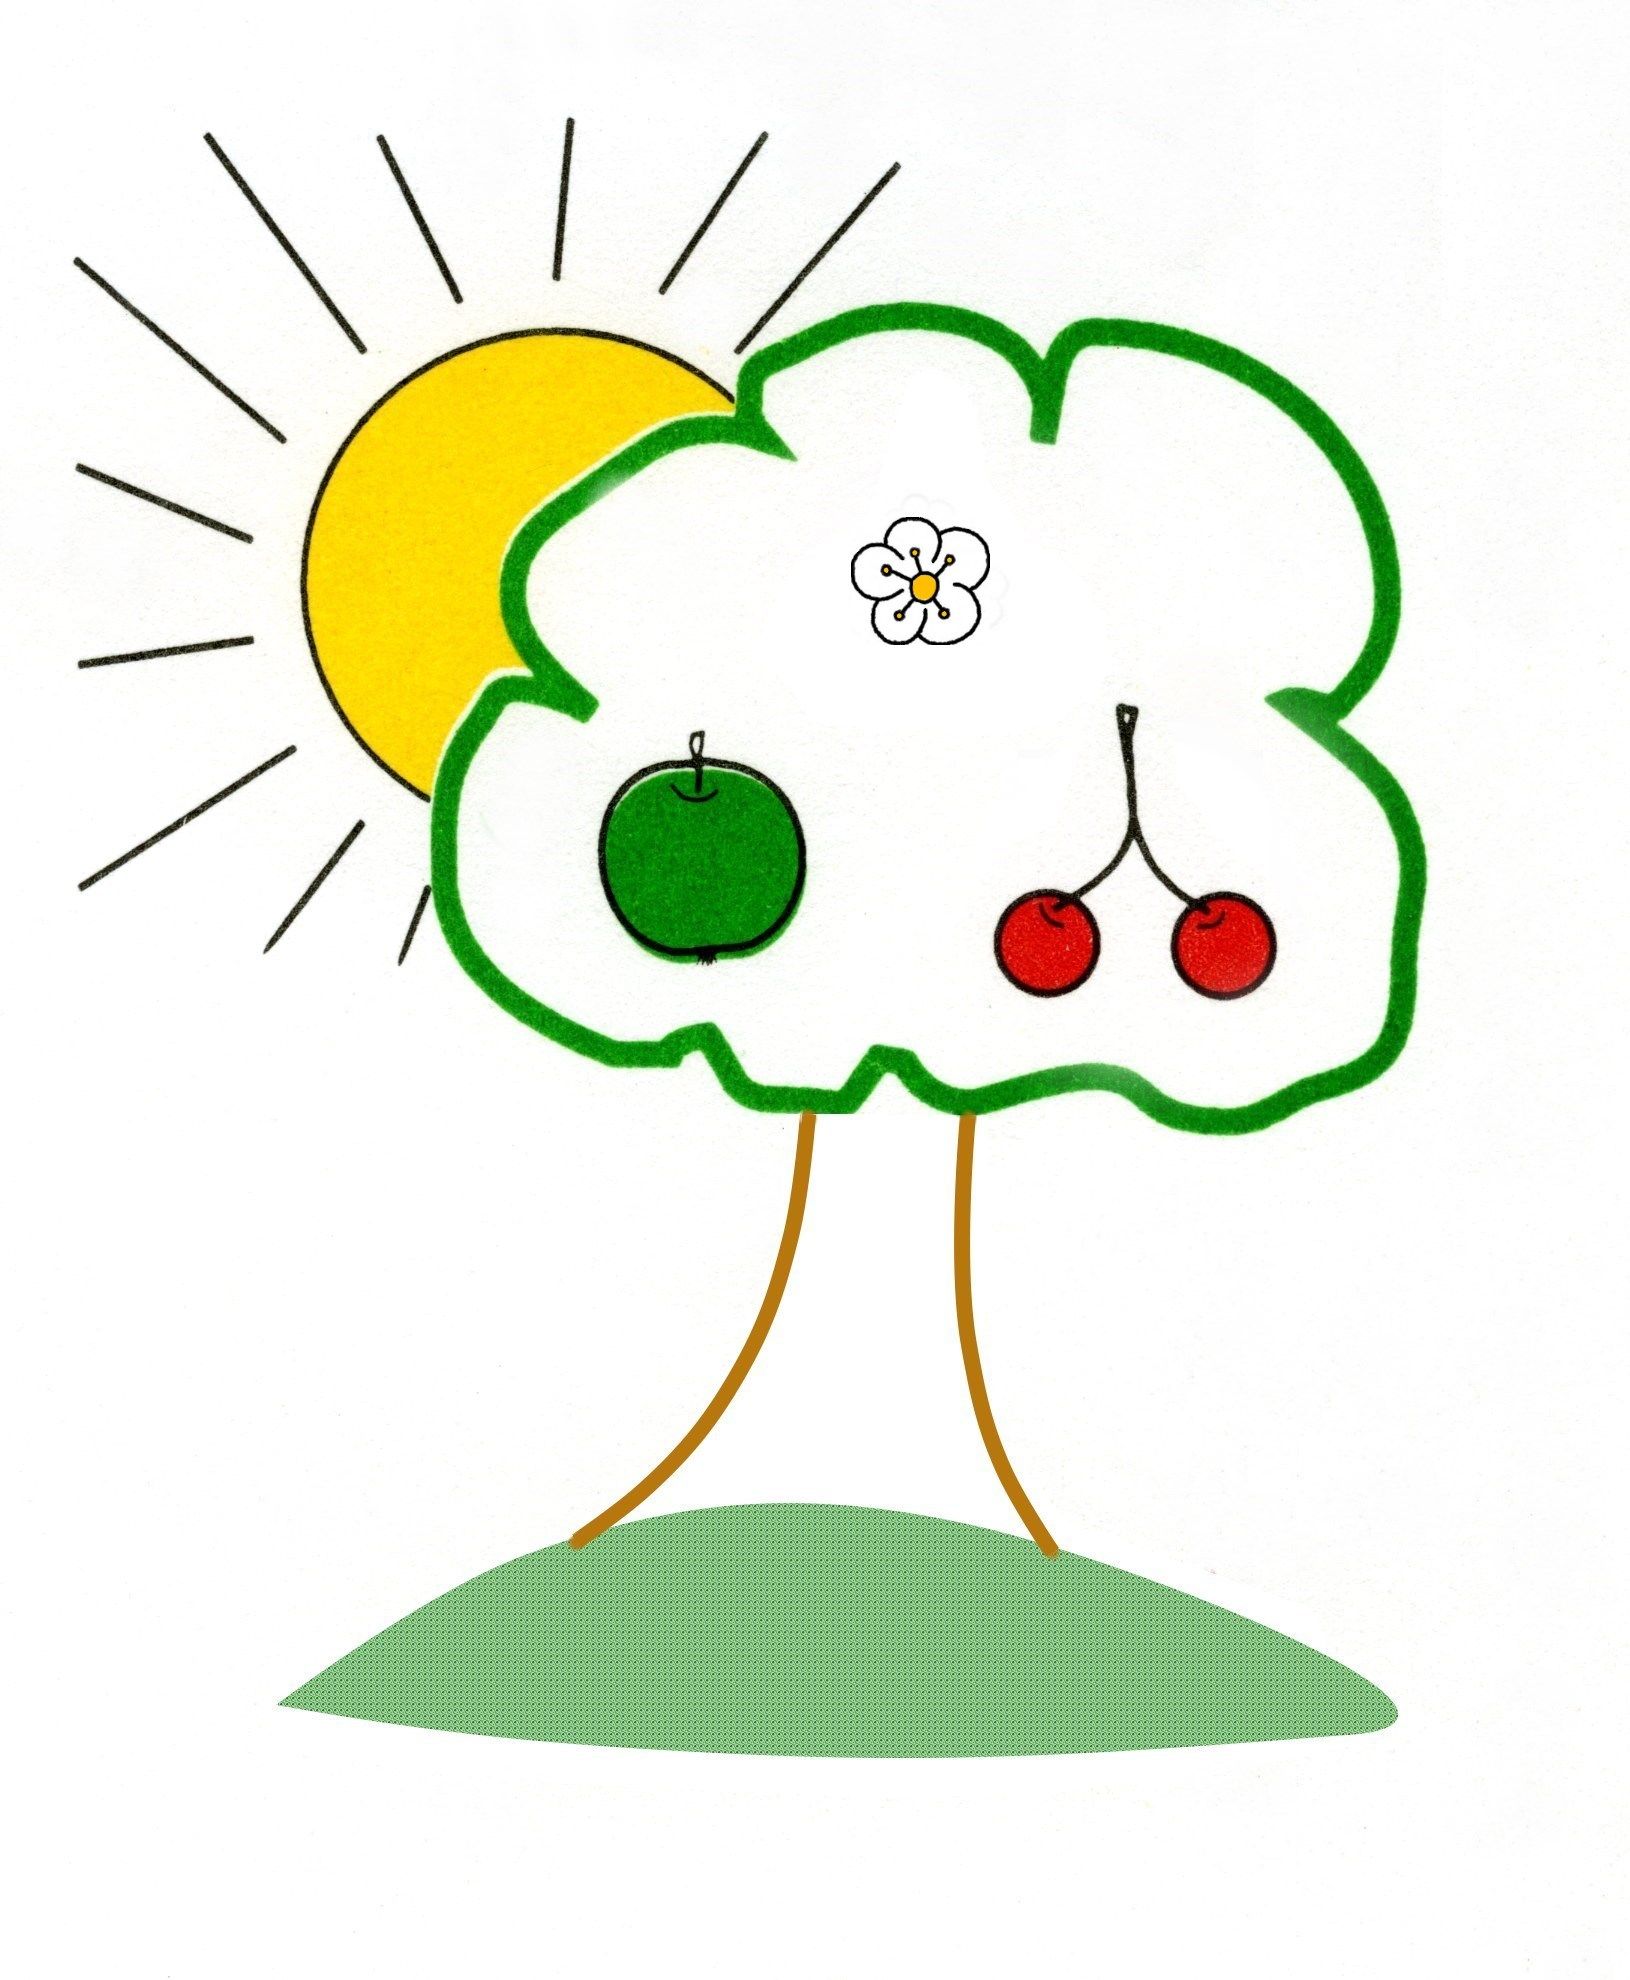 gemaltes Bild eines Baumes mit Apfel und Kirchen sowie einer Sonne 